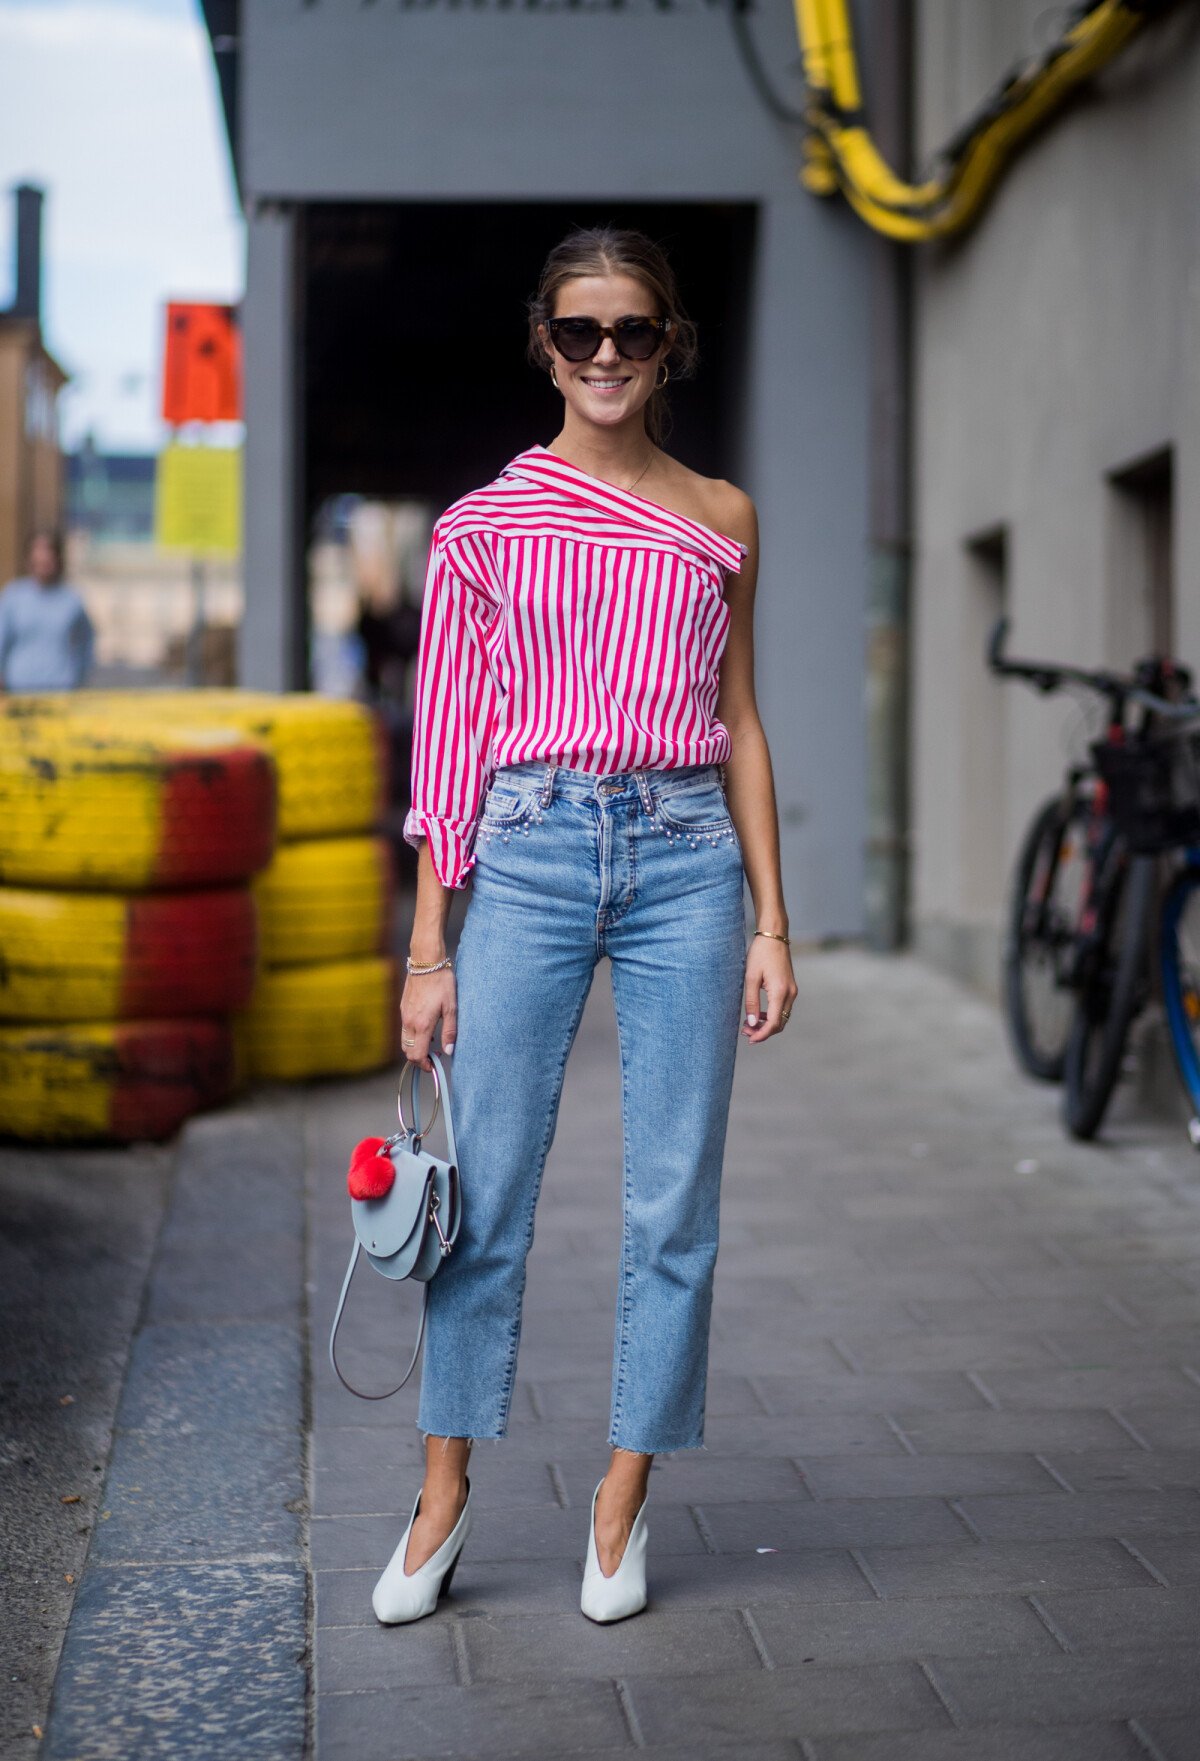 Foto: Calça jeans na moda: a camisa social listrada pode ganhar